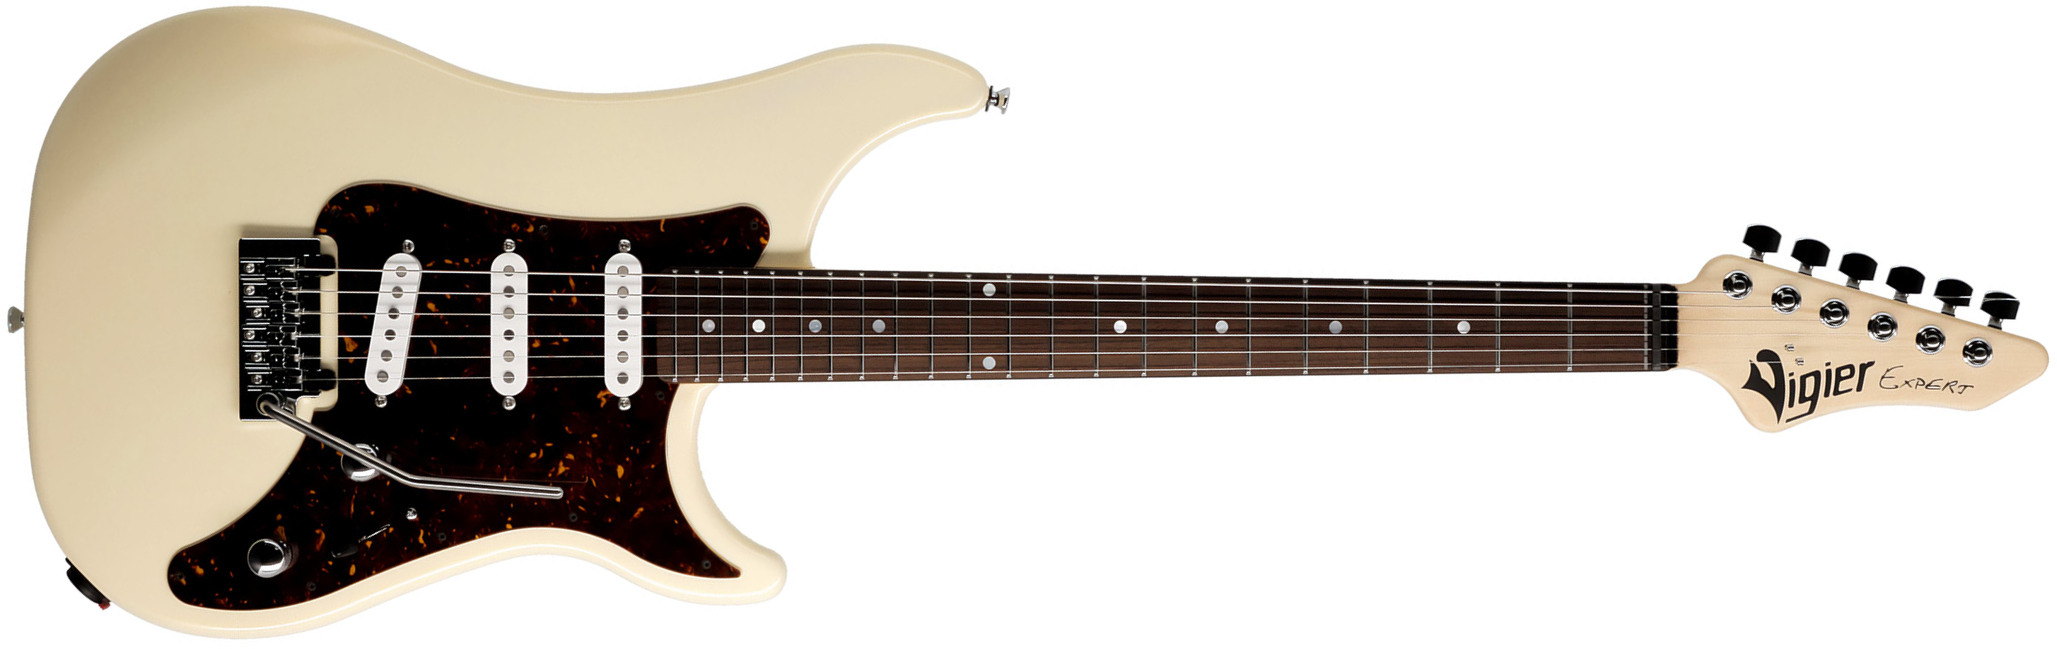 Vigier Expert Classic Rock 3s Trem Rw - Retro White - Guitare Électrique Forme Str - Main picture